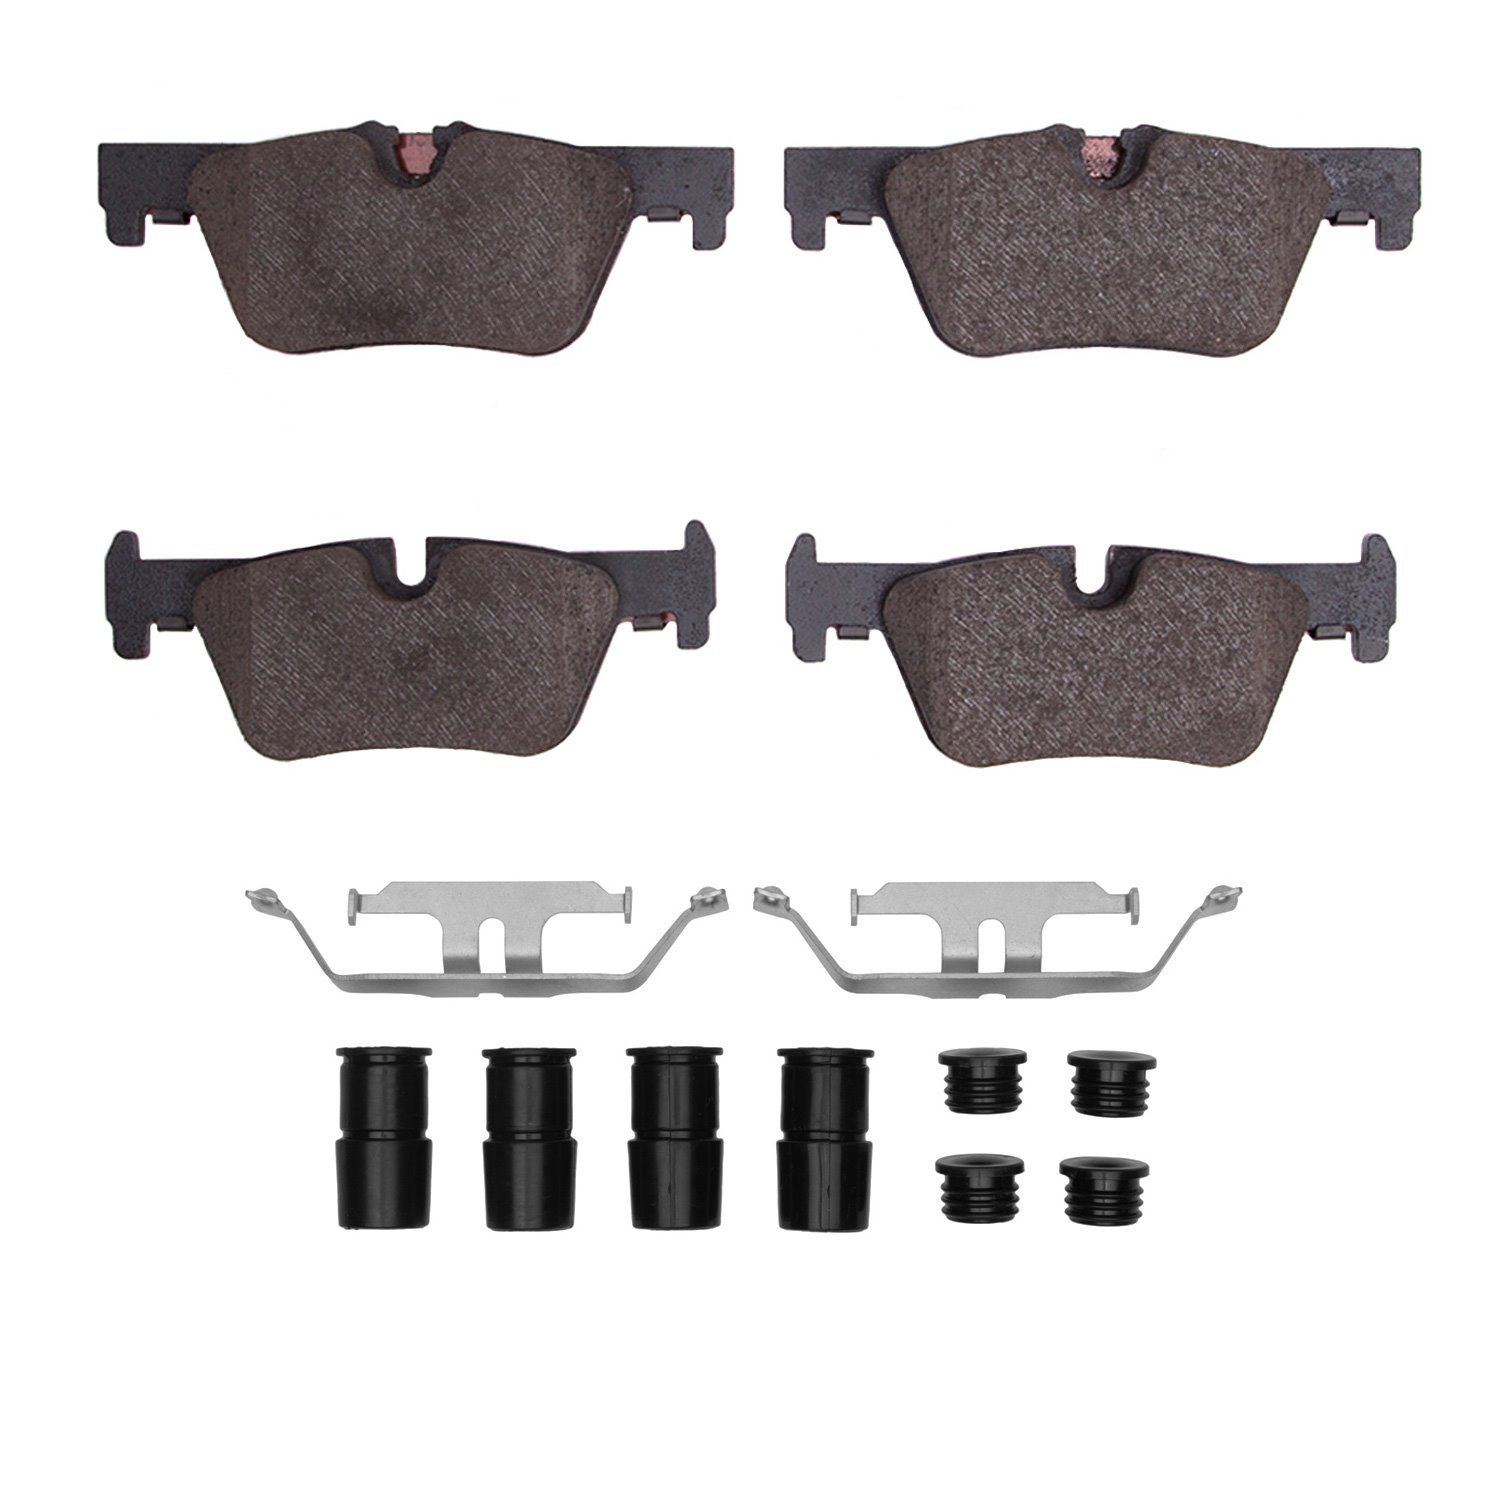 Euro Ceramic Brake Pads & Hardware Kit, 2012-2021 BMW, Position: Rear